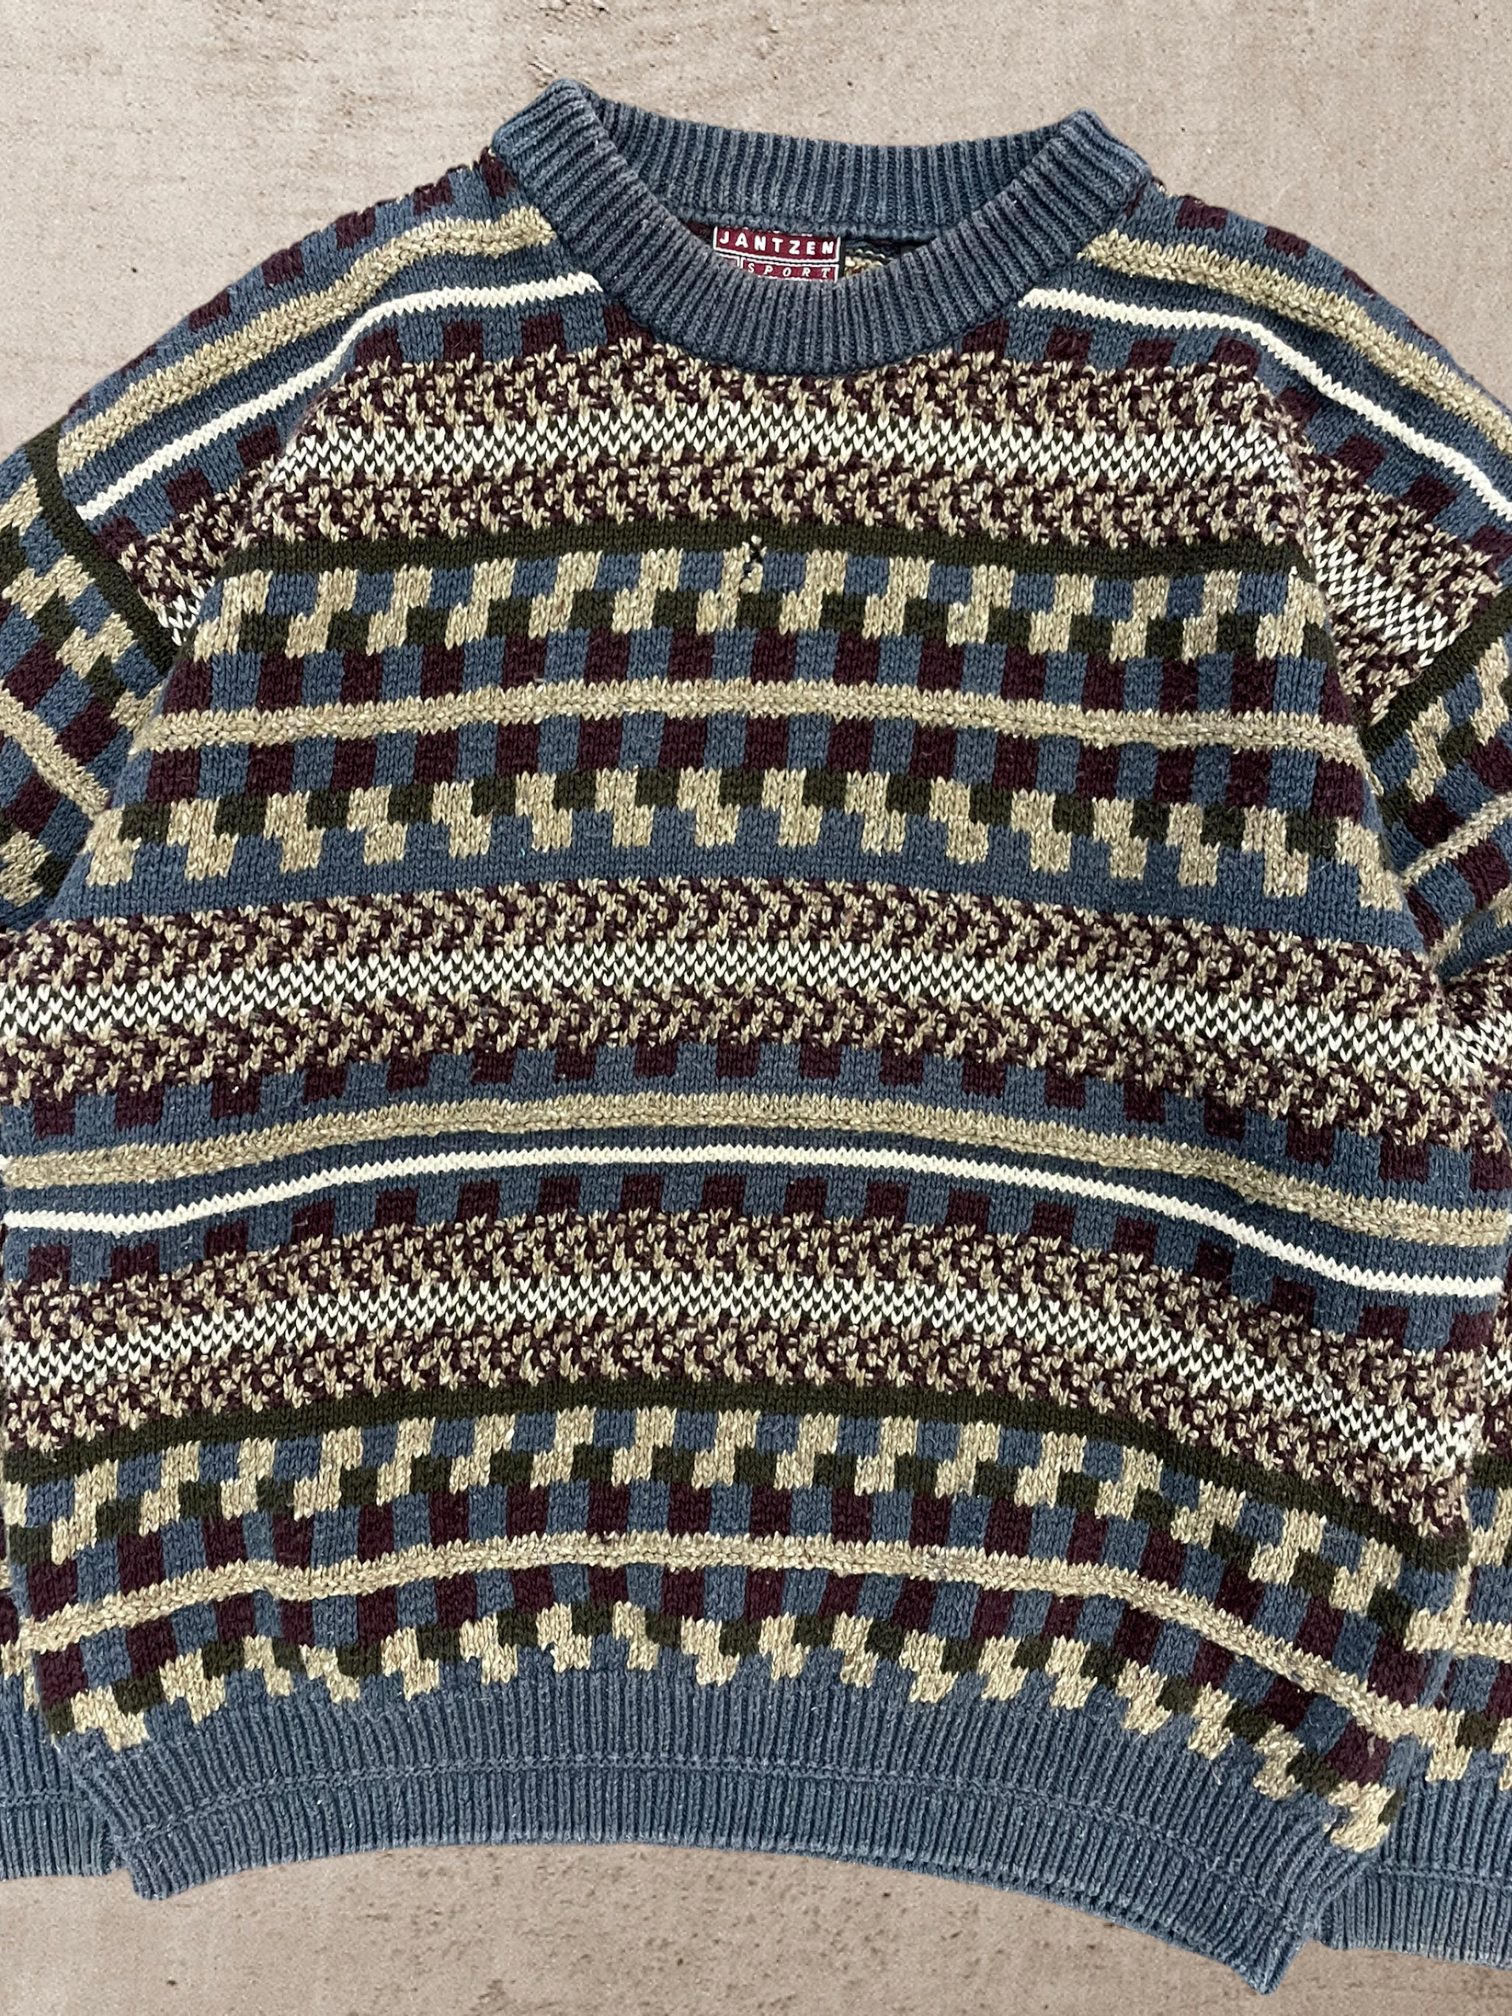 90s Multicolor Jantzen Knit Sweater - Large